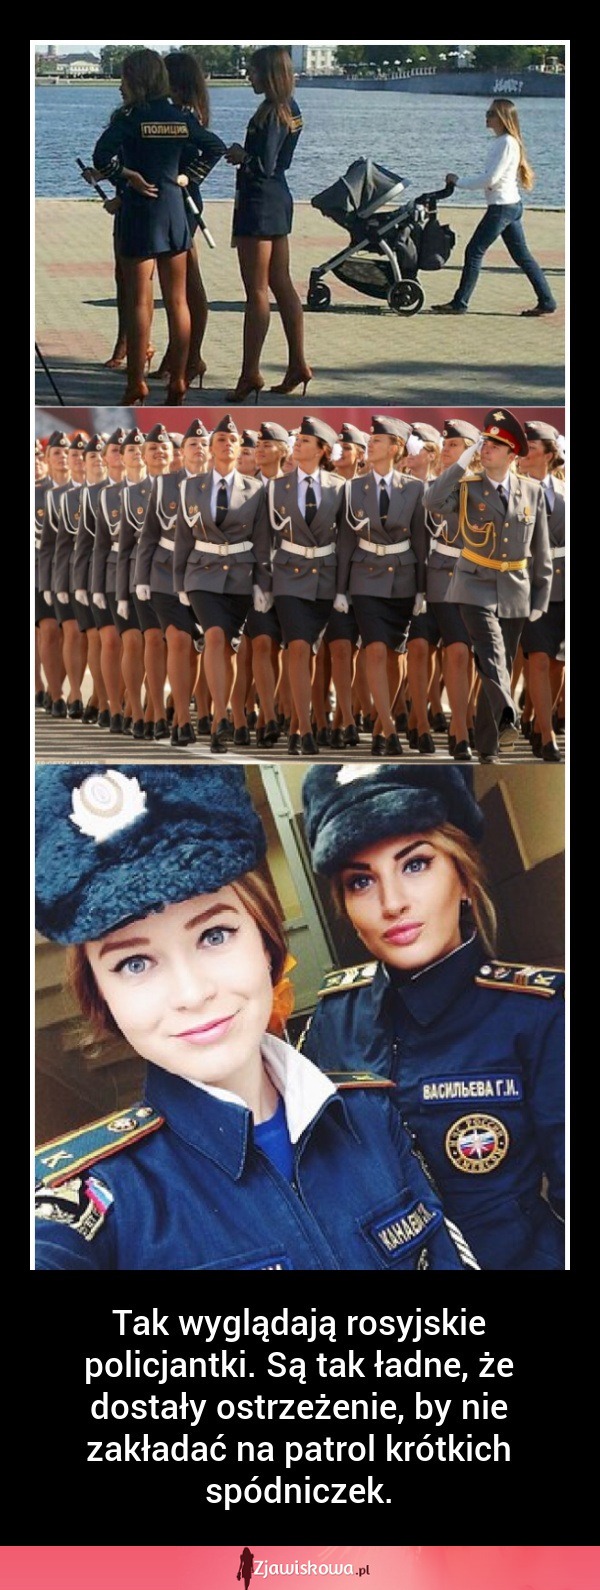 SZOK! Tak wyglądają rosyjskie policjantki! Aż chce się je... ;)